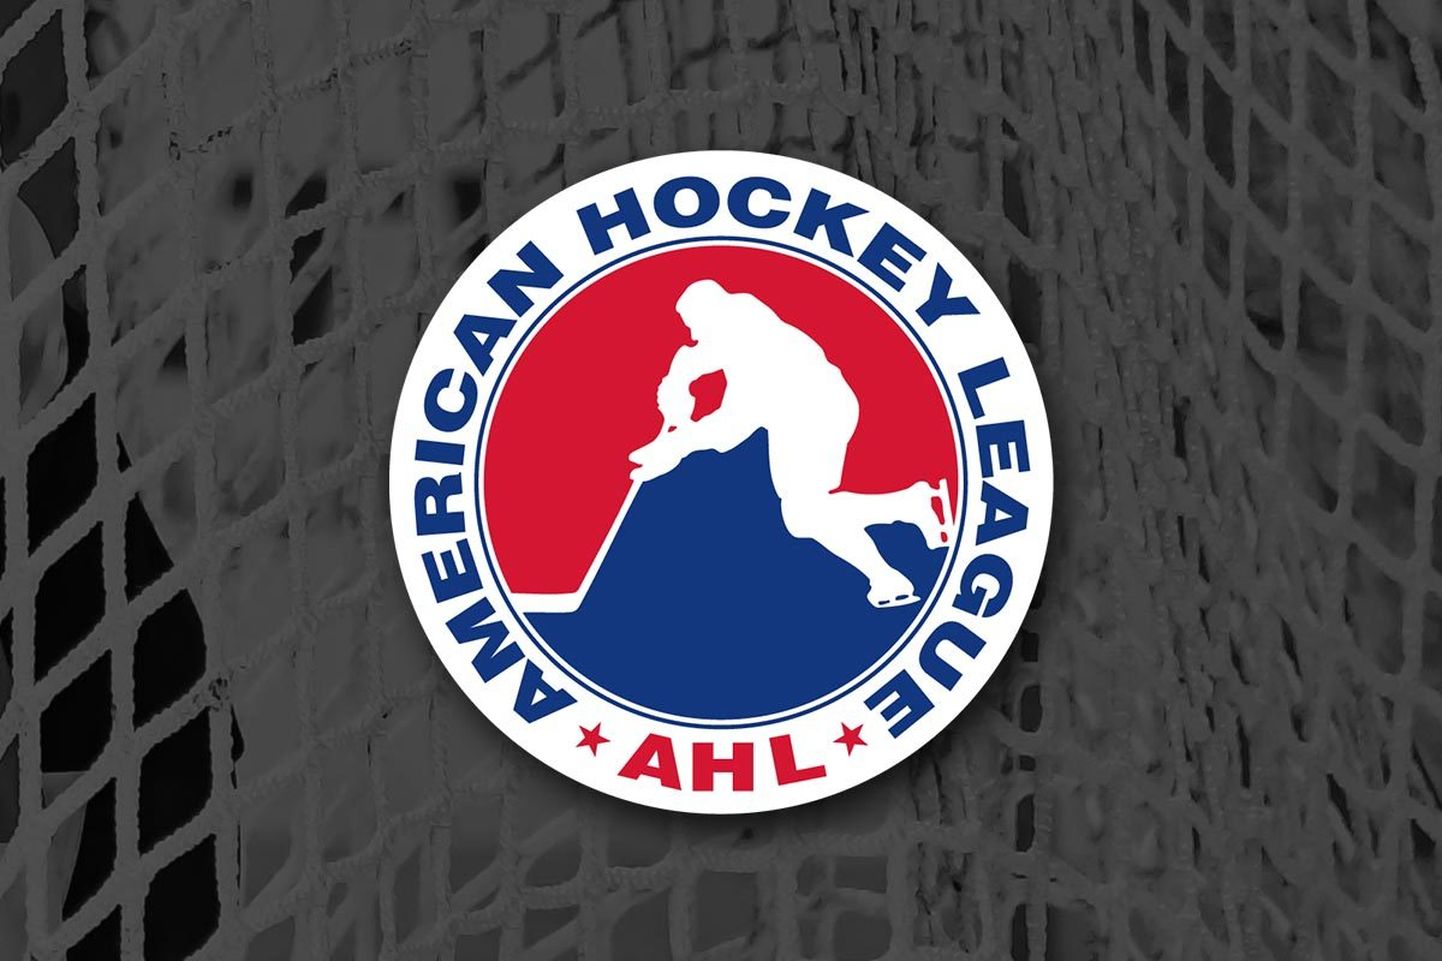 AHL logo